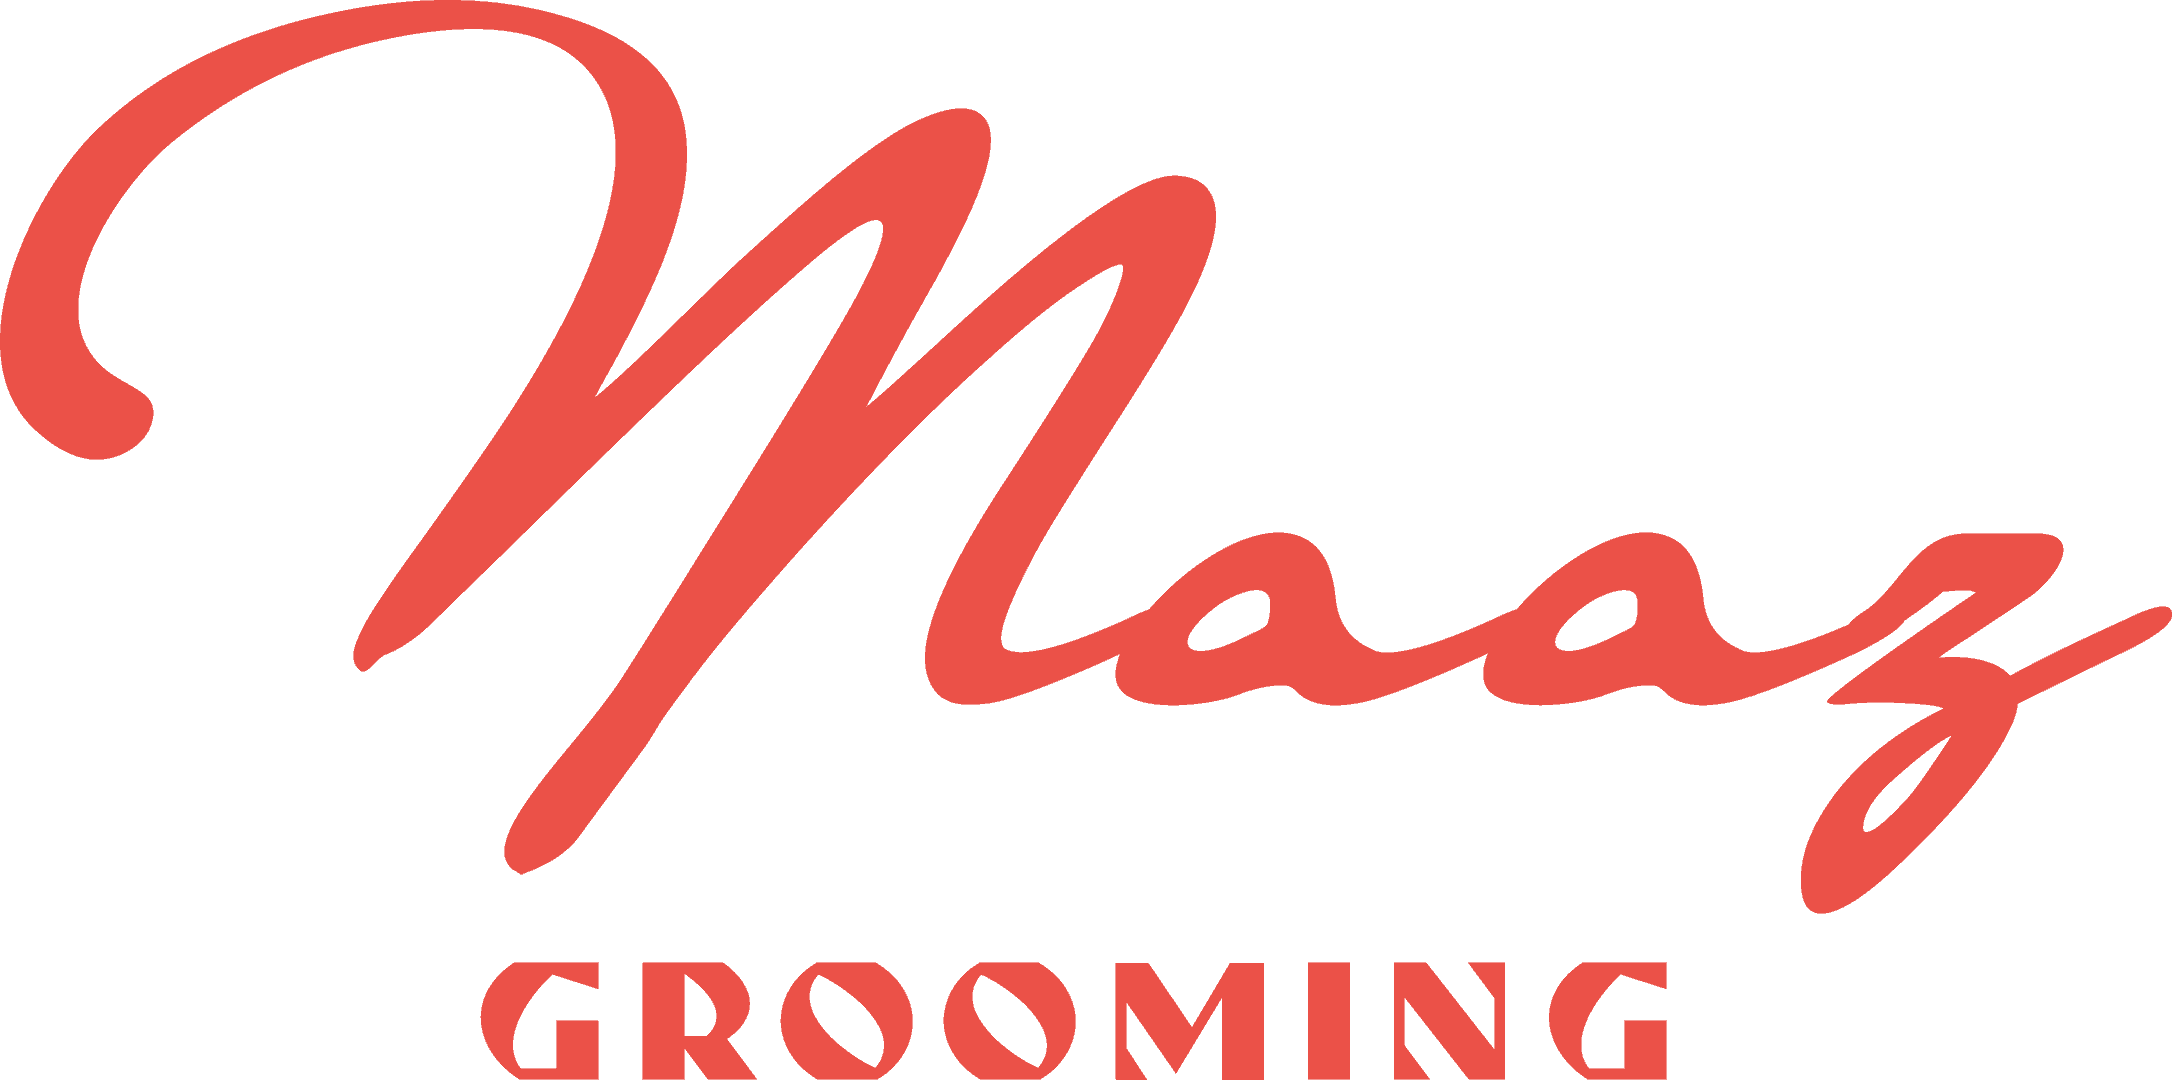 Maaz Grooming Logo